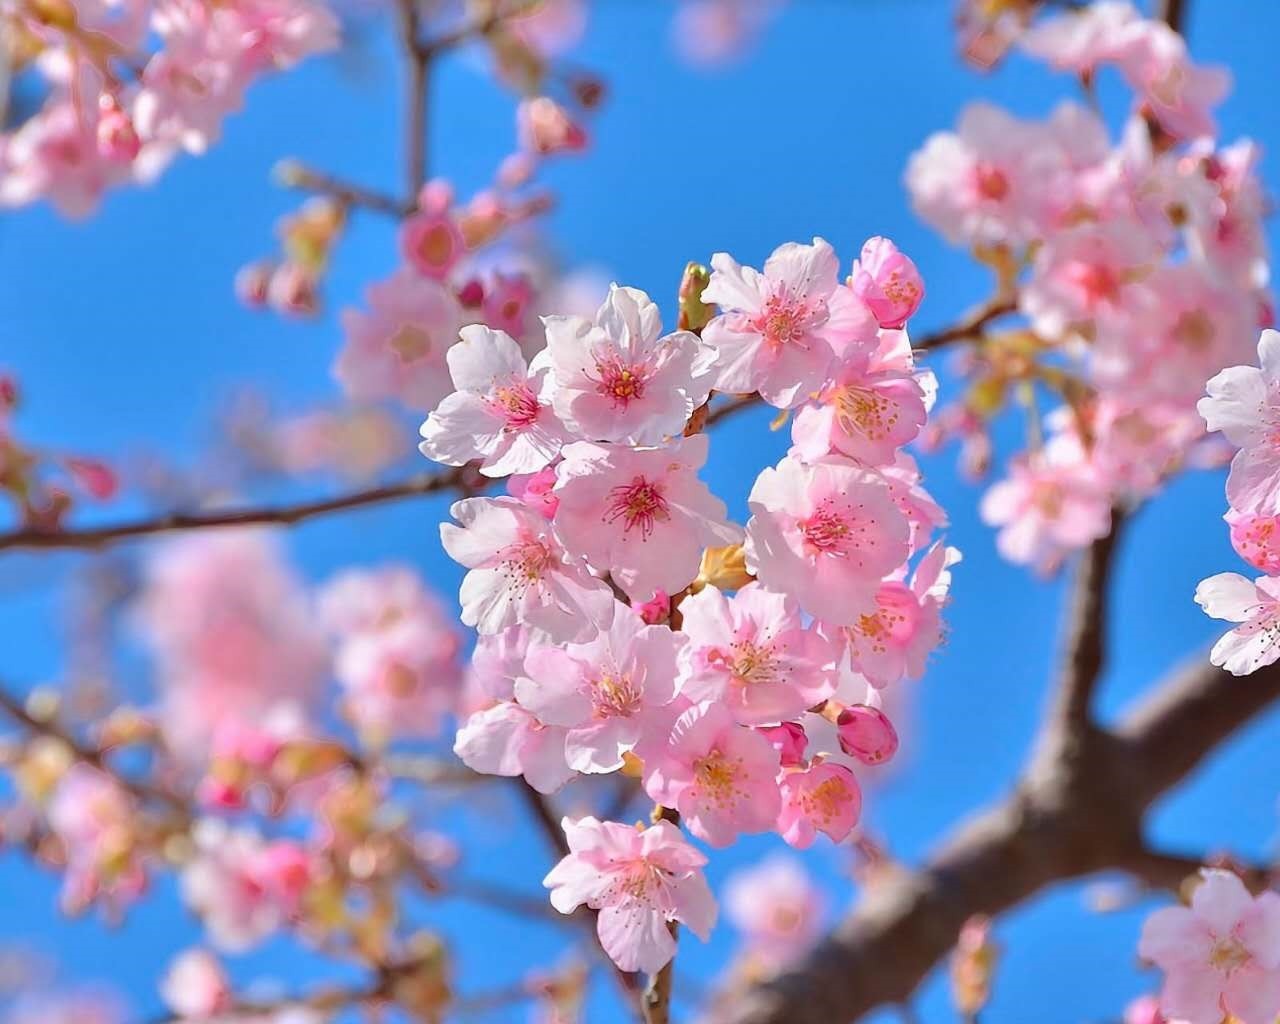 原创|相识在桃花盛开的季节-刘向阳作品请你欣赏